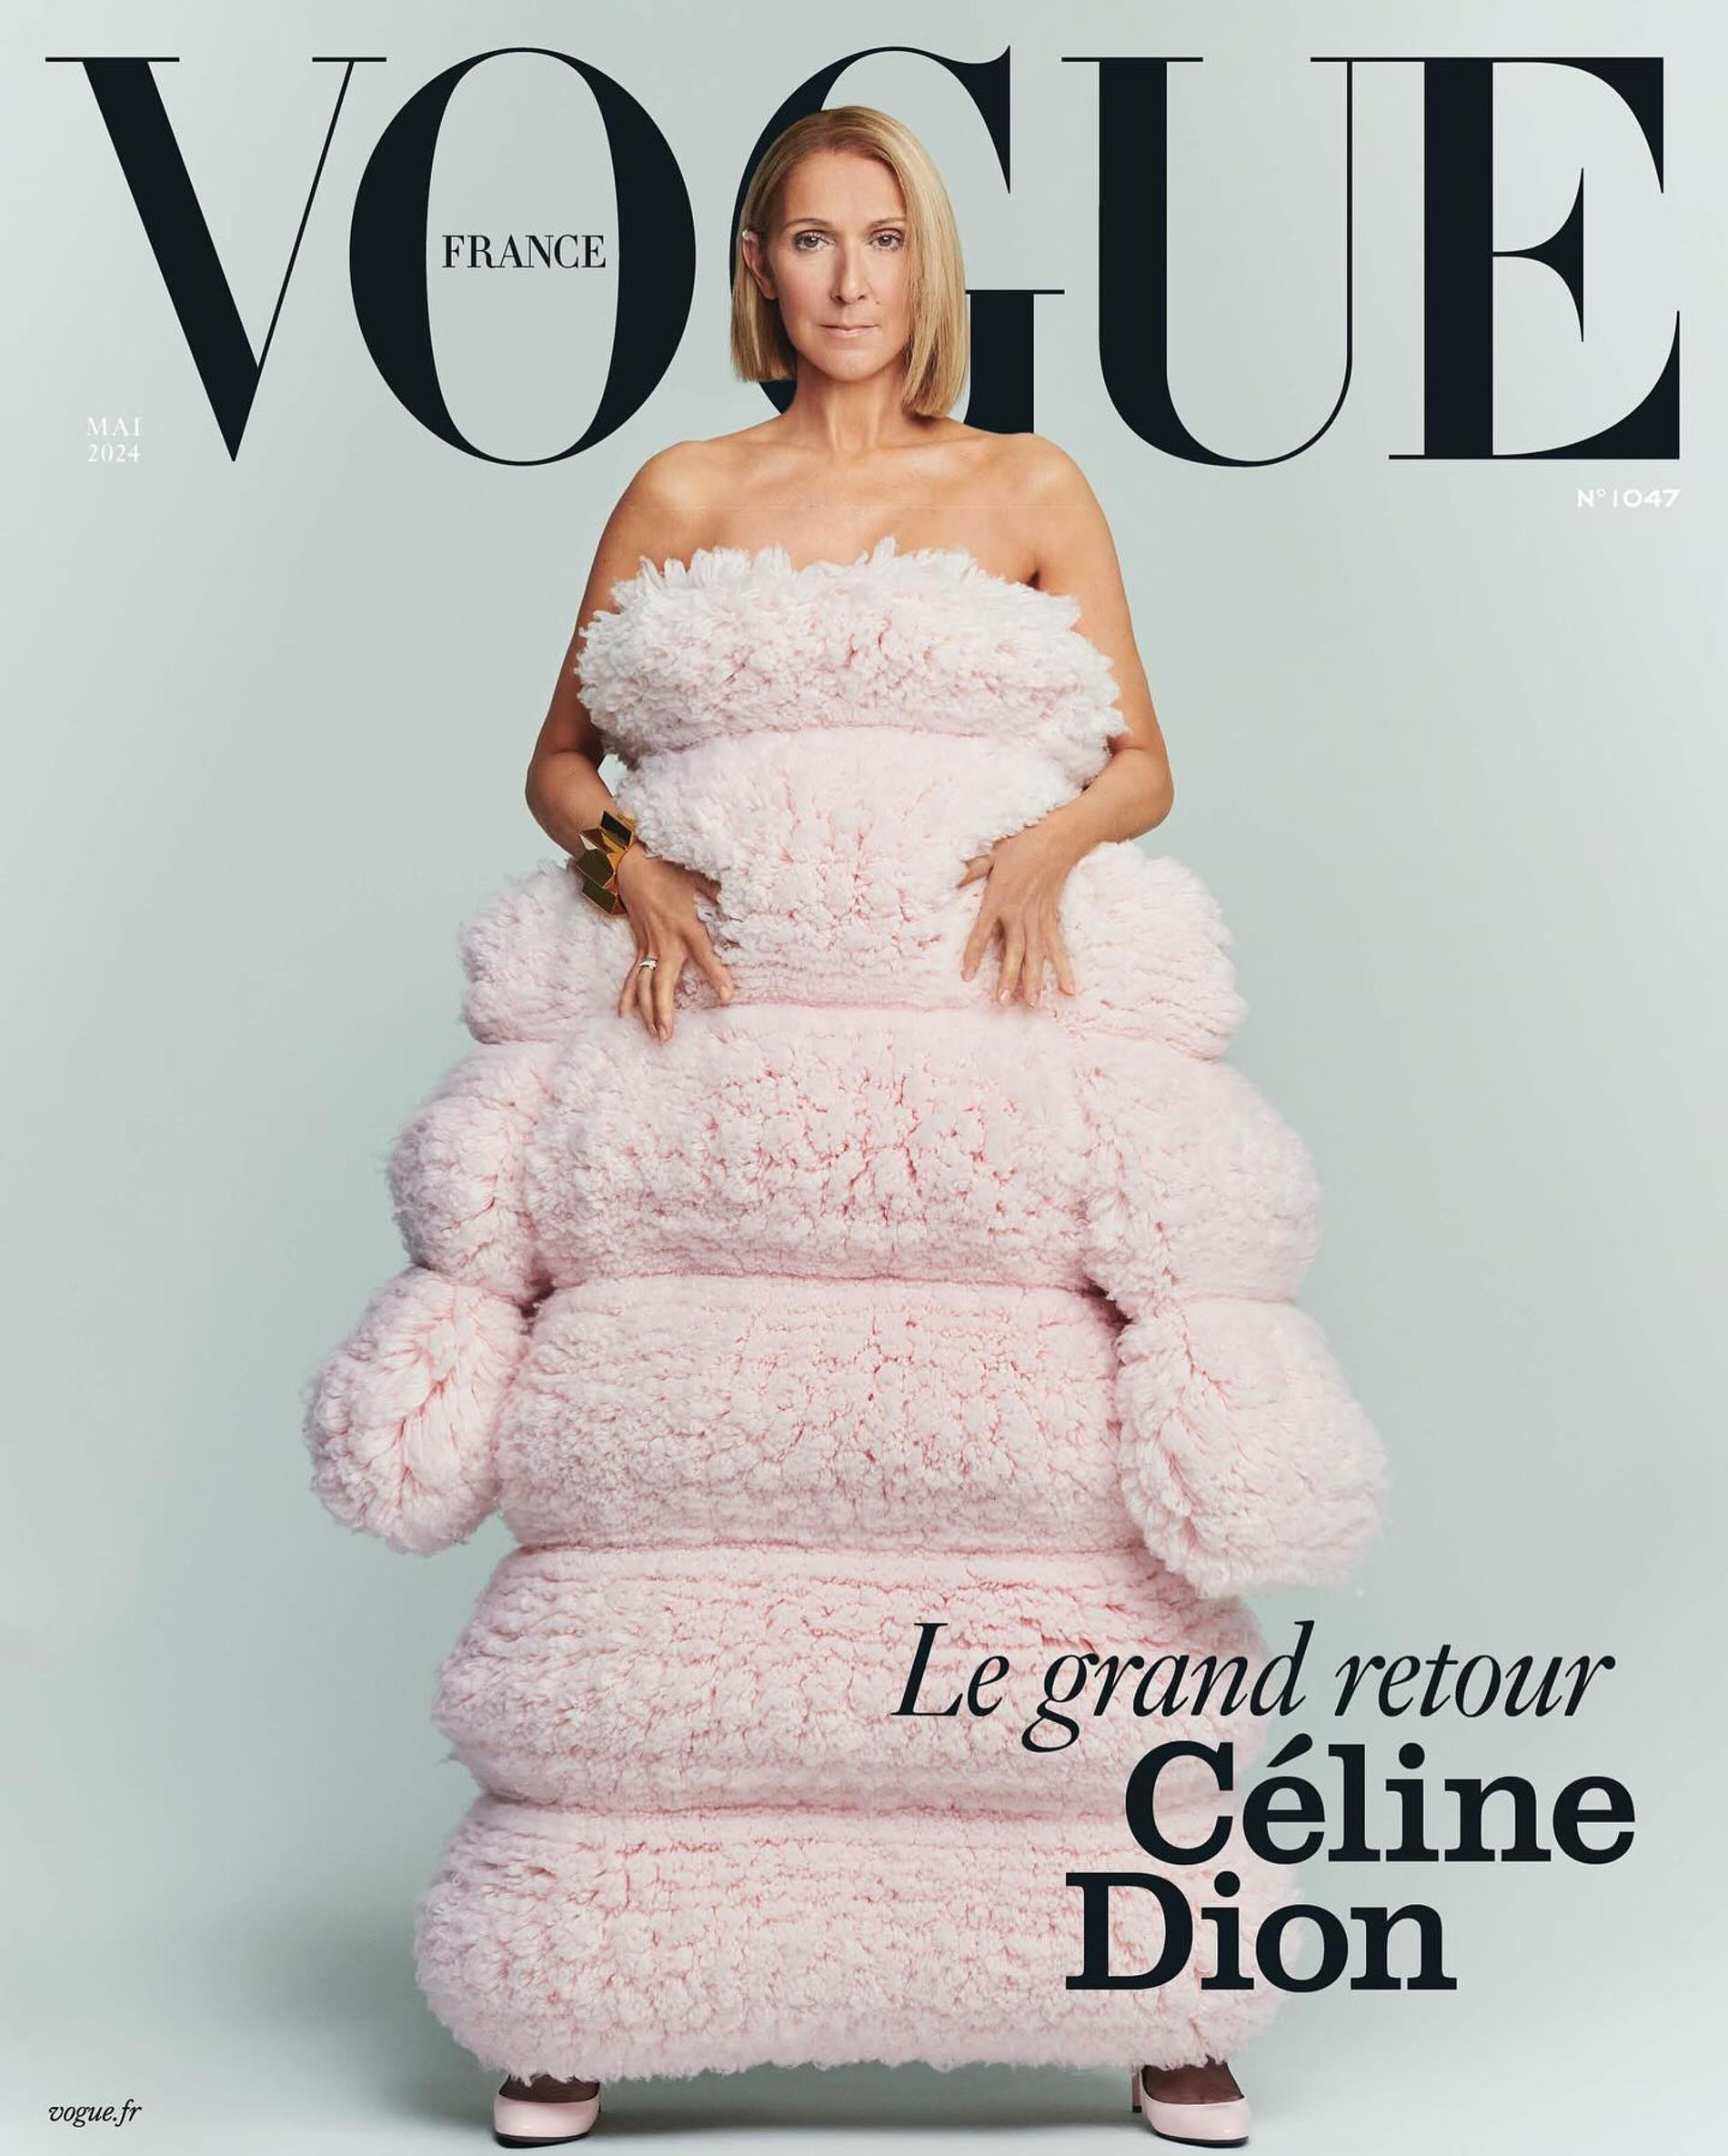 Селин Дион на майской обложке Vogue. Фото: Vogue France